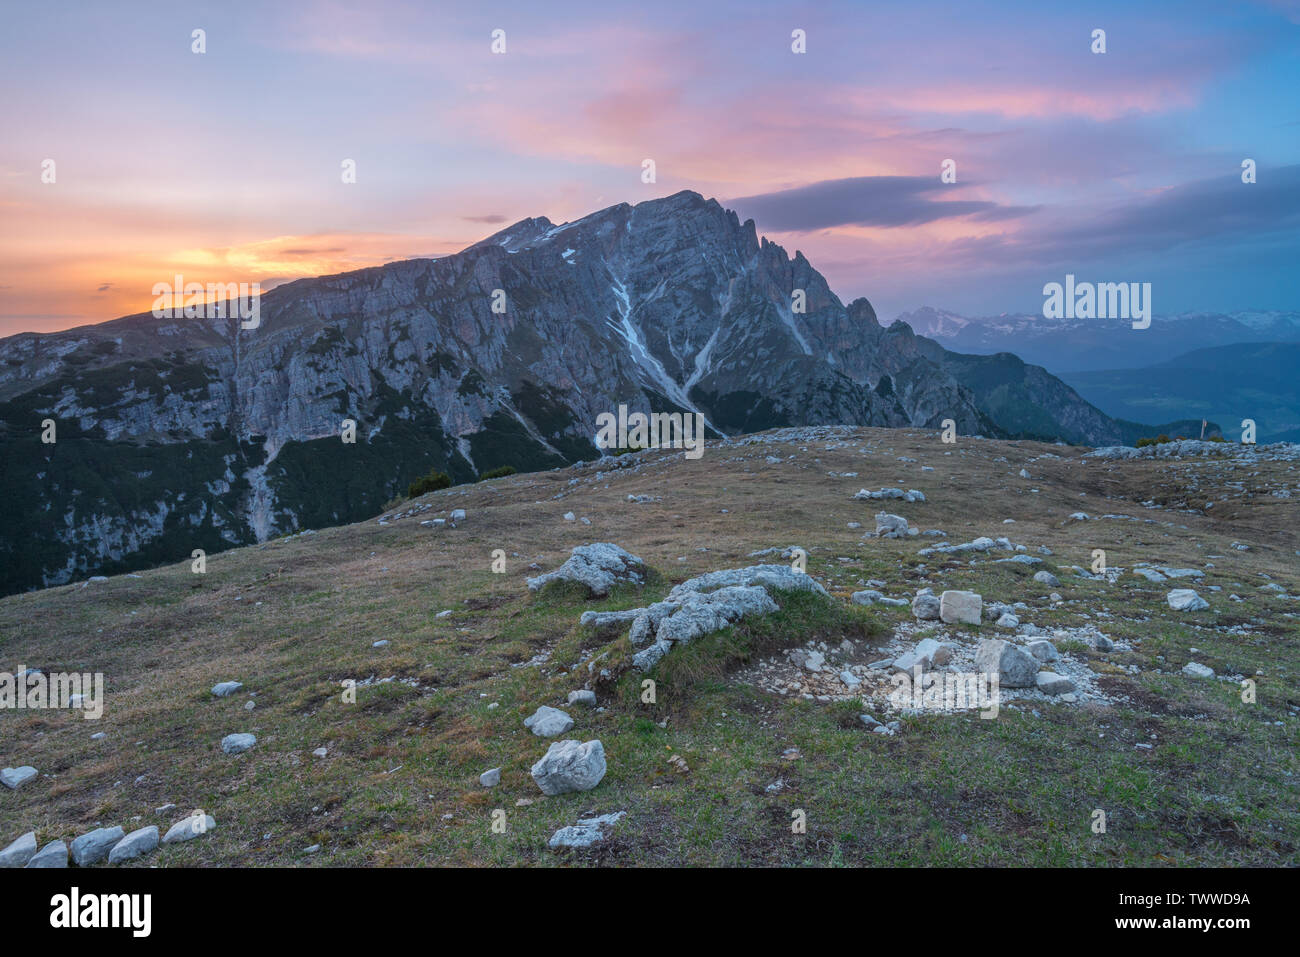 Coucher du soleil vif, alpenglow du sommet du Monte Espèce ou Strudelkopf. Dolomites italiennes au coucher du soleil, ciel coloré avec des nuages roses et mauves. Banque D'Images